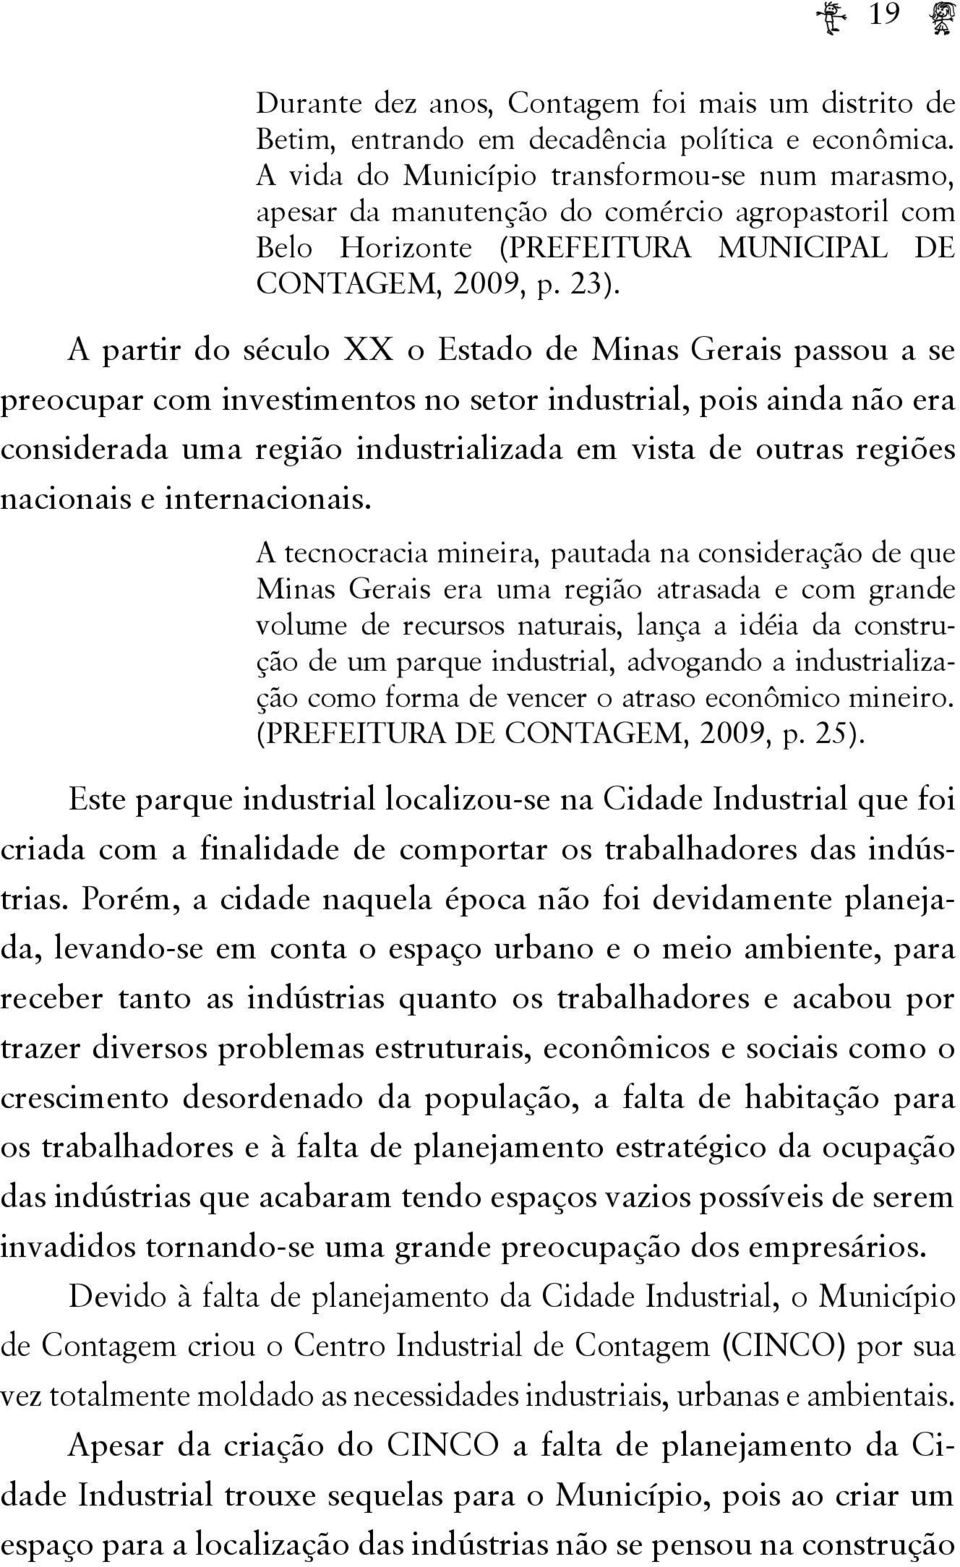 A partir do século XX o Estado de Minas Gerais passou a se preocupar com investimentos no setor industrial, pois ainda não era considerada uma região industrializada em vista de outras regiões